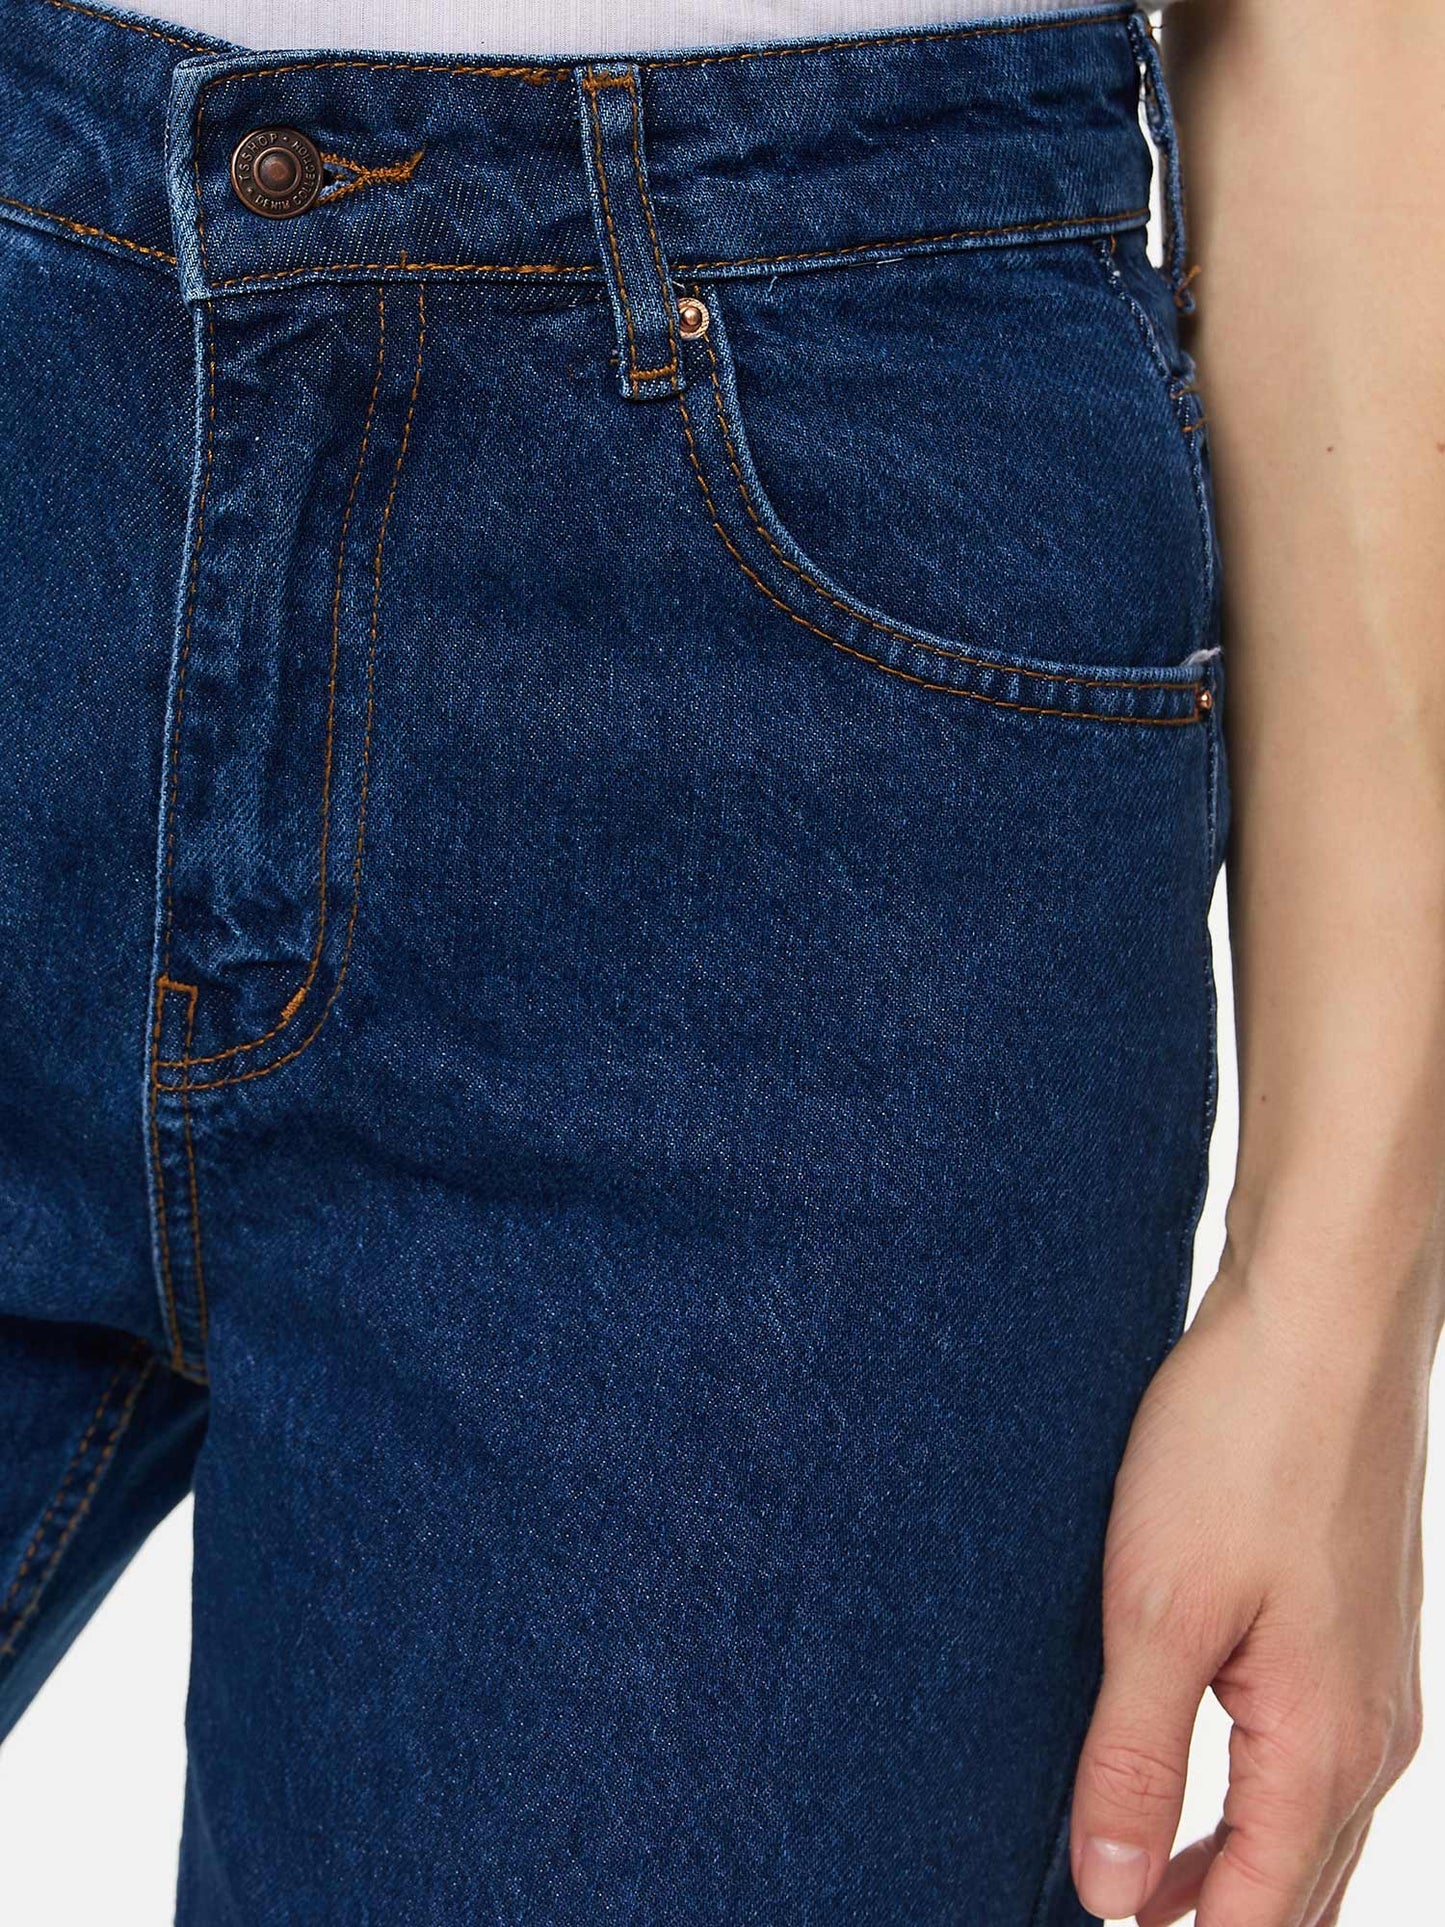 Tazzio Damen Cropped Jeans F125